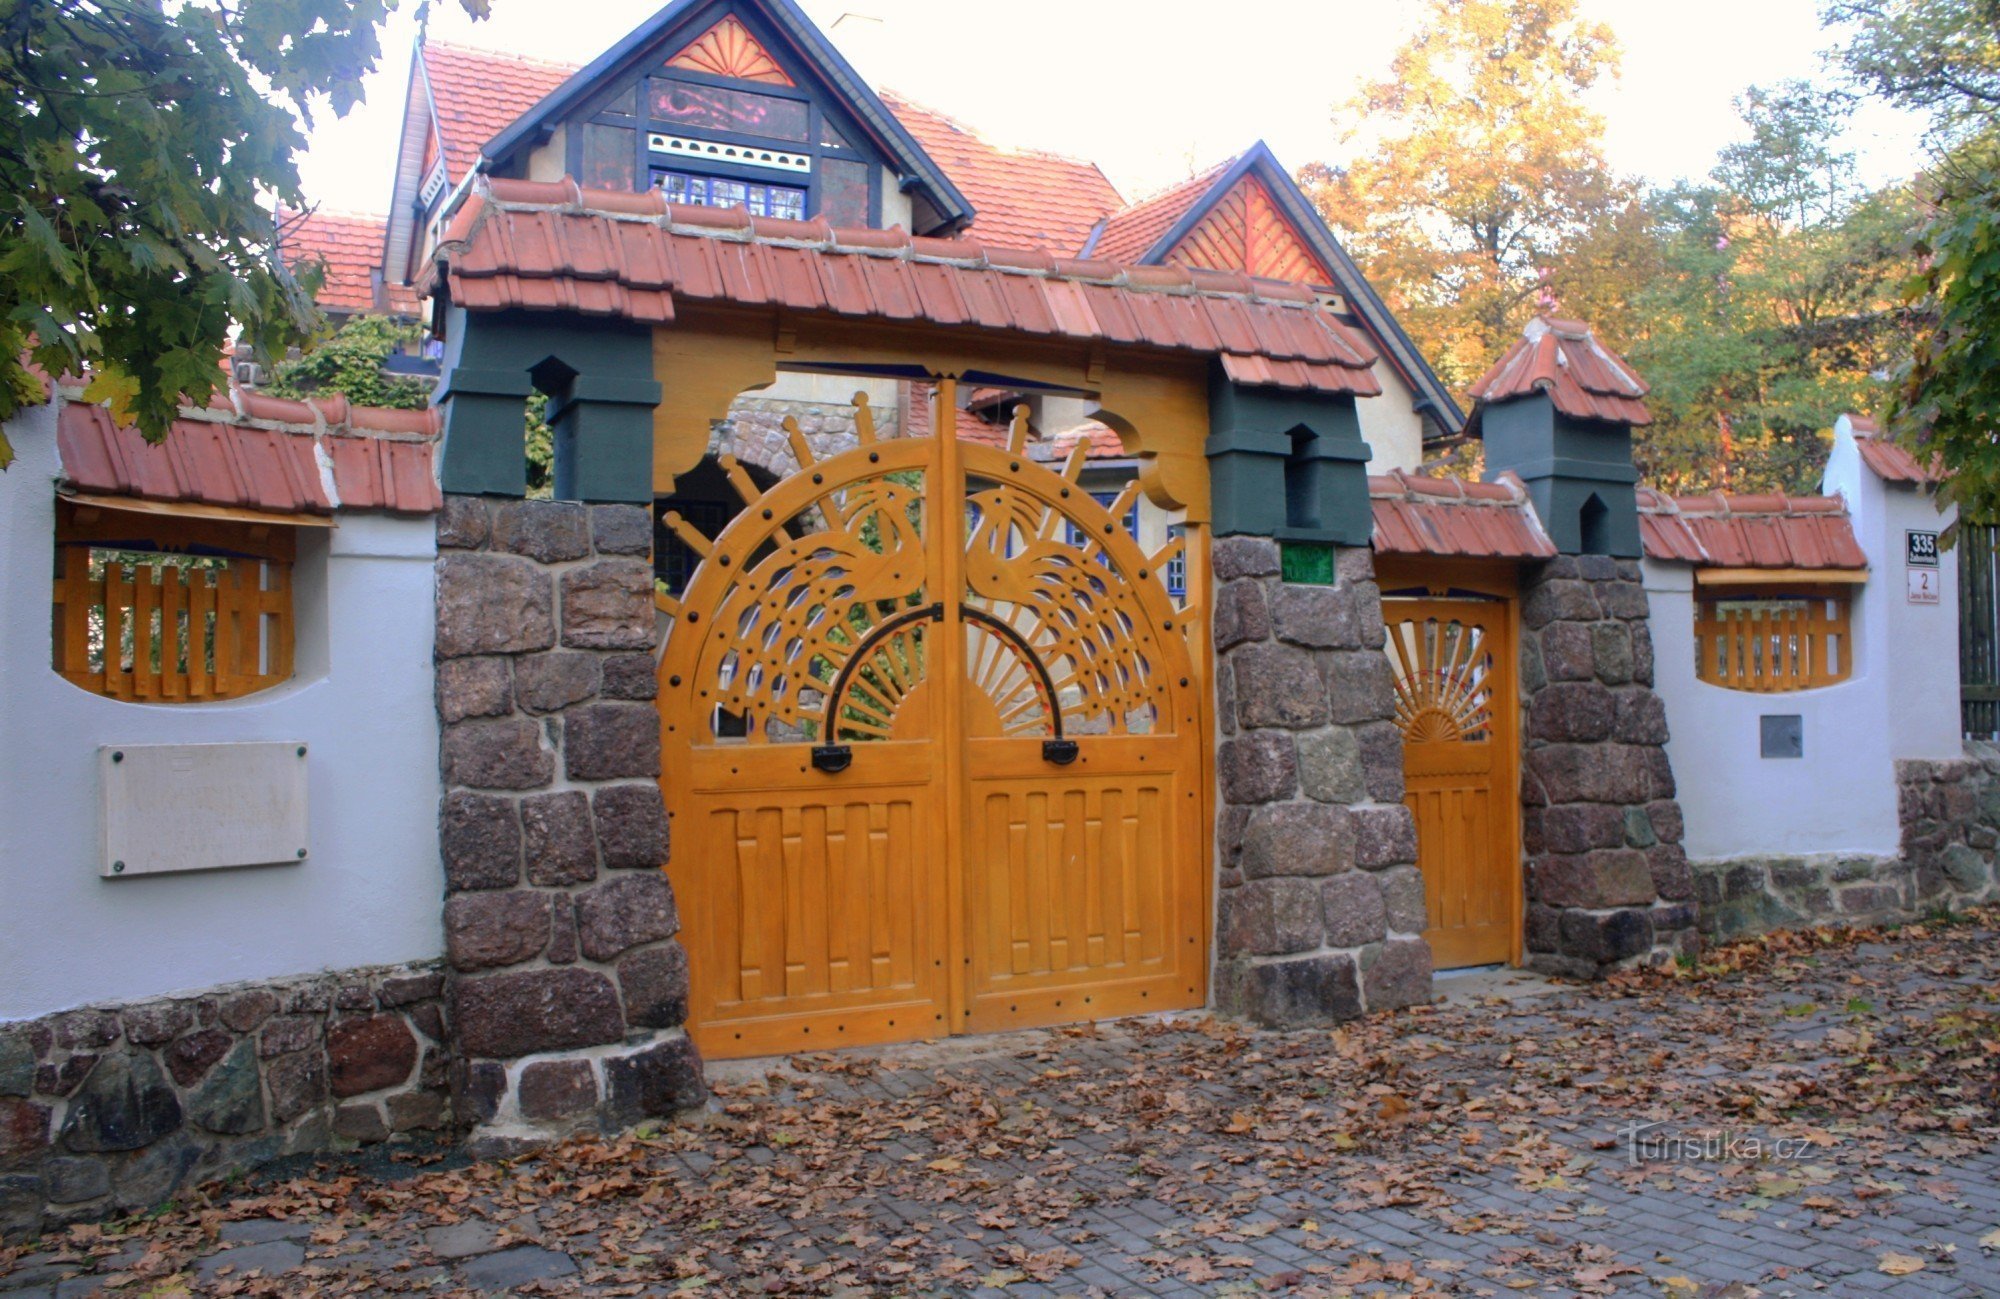 ブルノ - ユルコヴィッチの別荘、入口部分